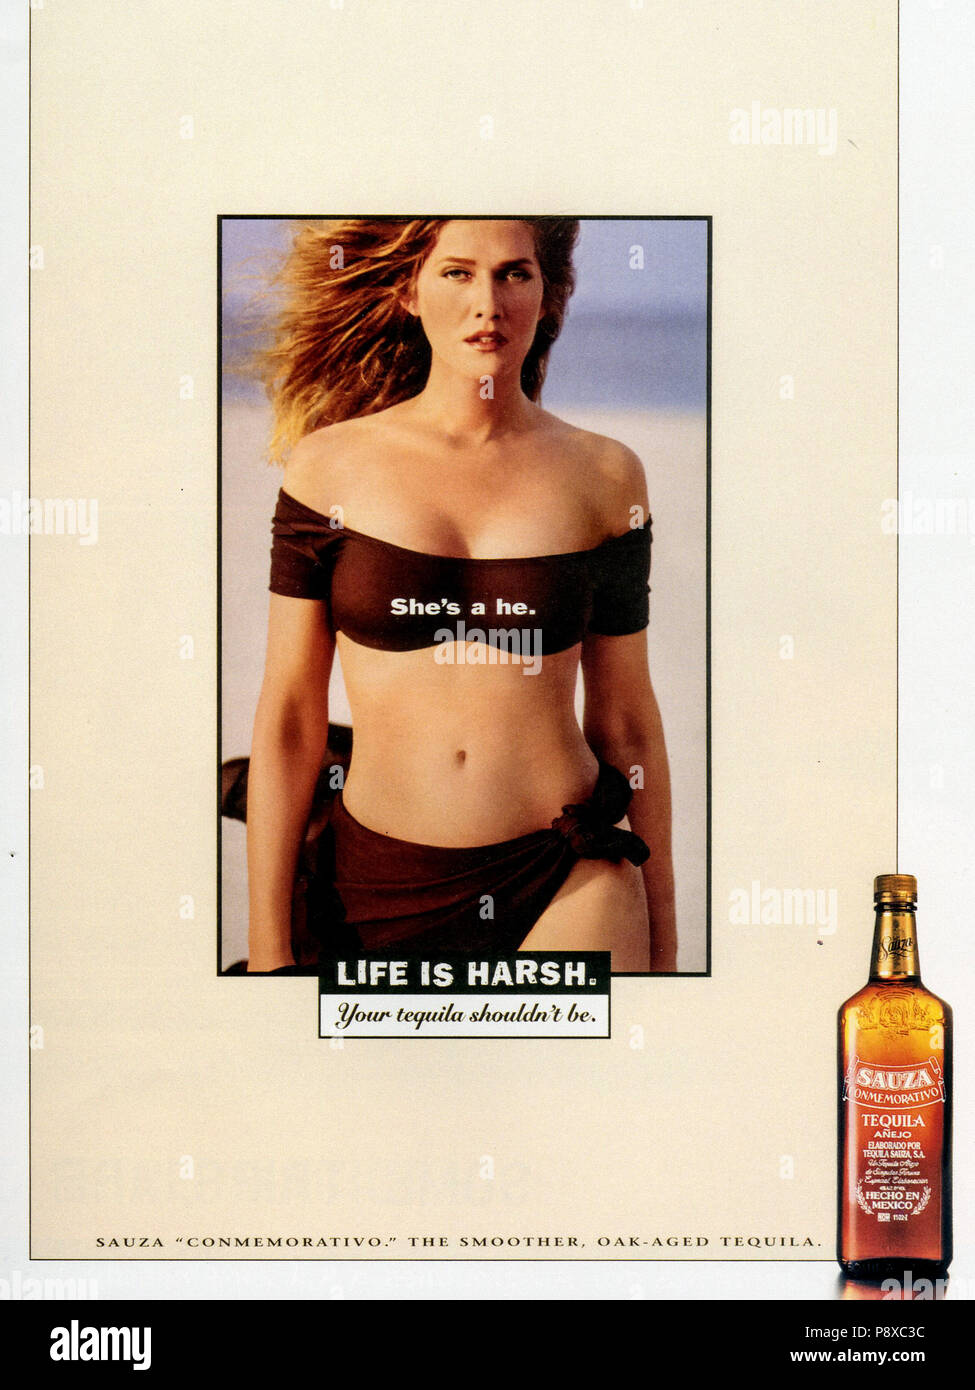 1990s ads